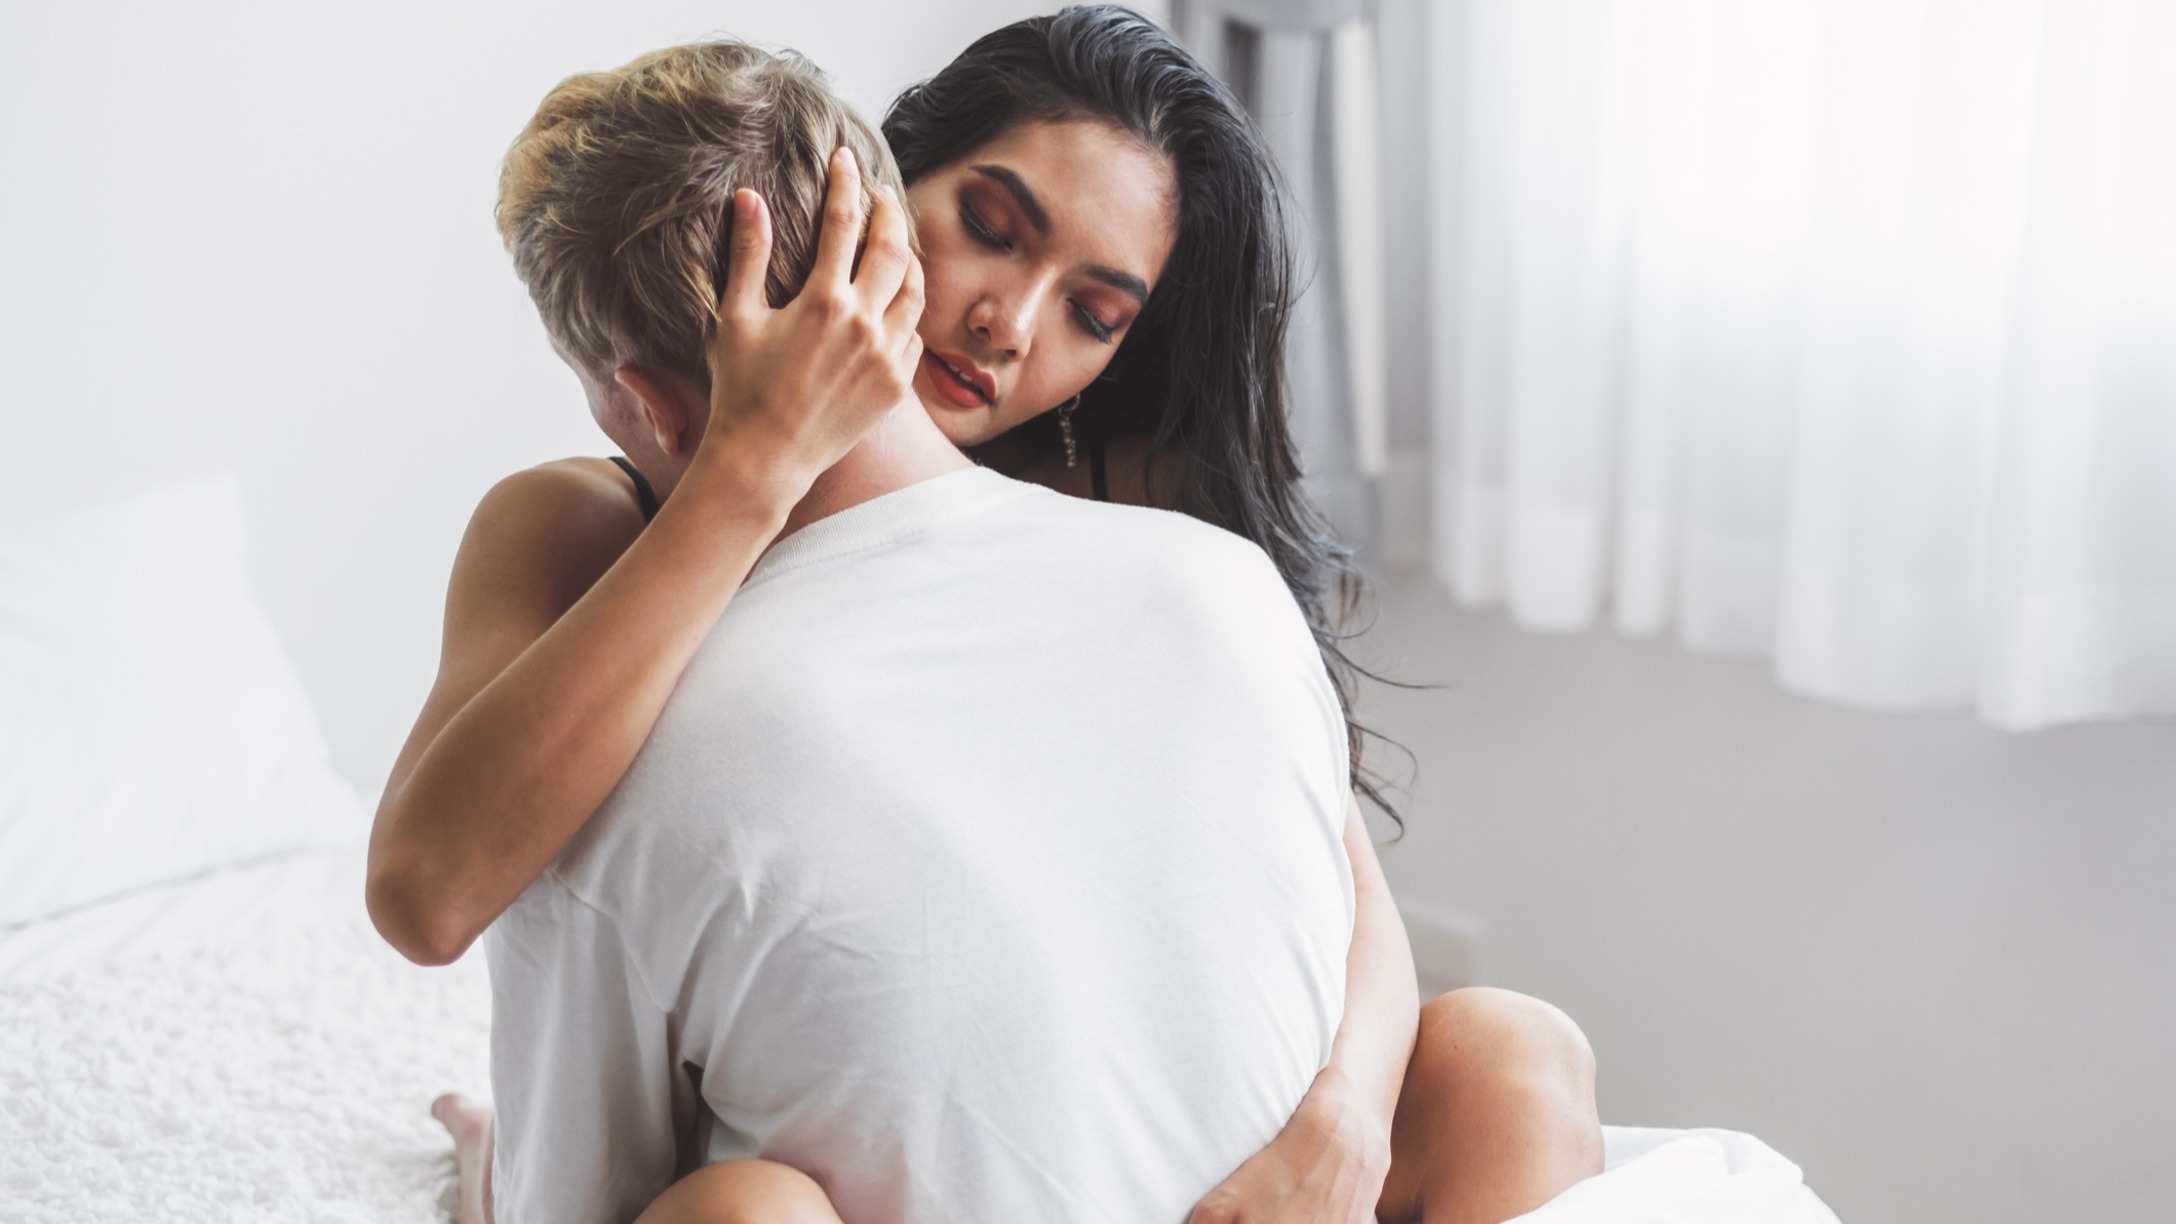 married sex made better instructional videos